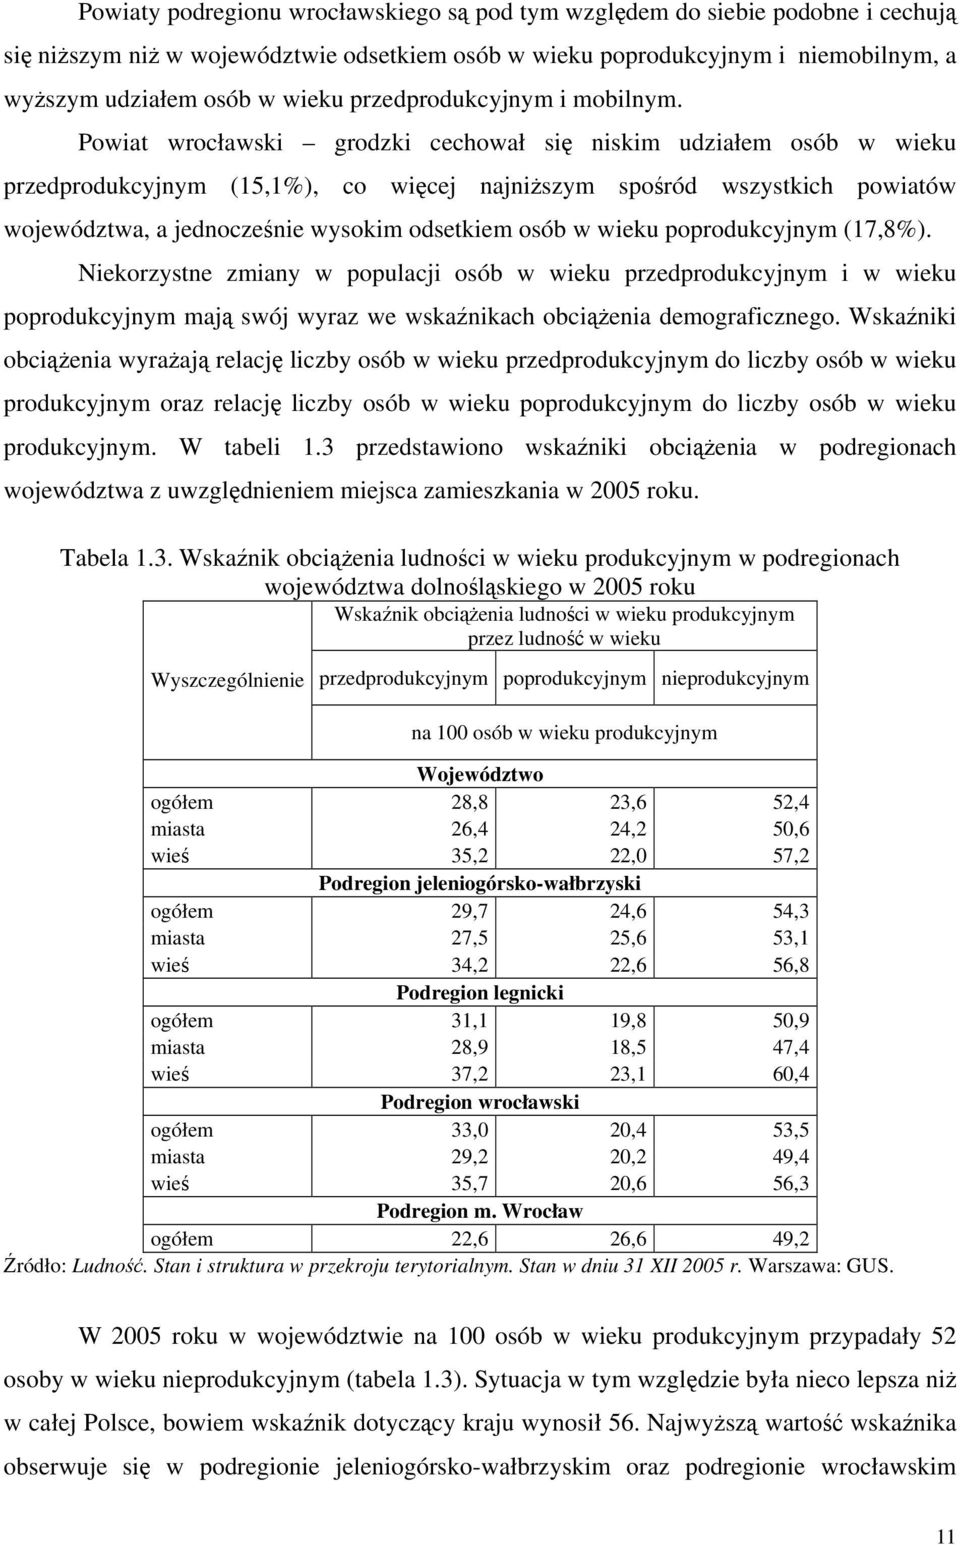 Powiat wrocławski grodzki cechował się niskim udziałem osób w wieku przedprodukcyjnym (15,1%), co więcej najniższym spośród wszystkich powiatów województwa, a jednocześnie wysokim odsetkiem osób w